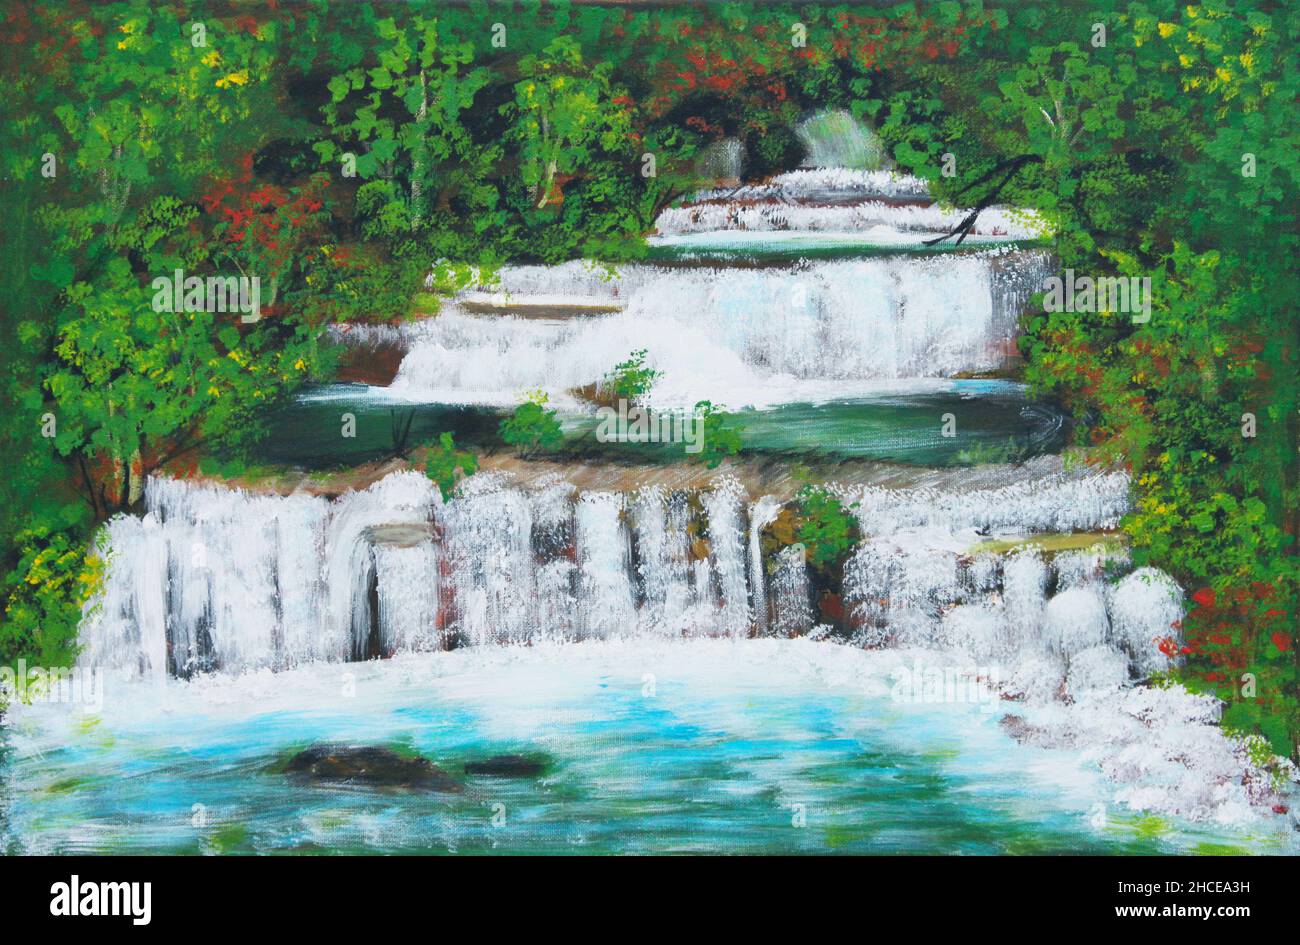 Dipinto ad olio su tela di bella cascata multilivello in Thailandia chiamato Sai Yok Cascate, immerso nella foresta tra gli alberi Foto Stock